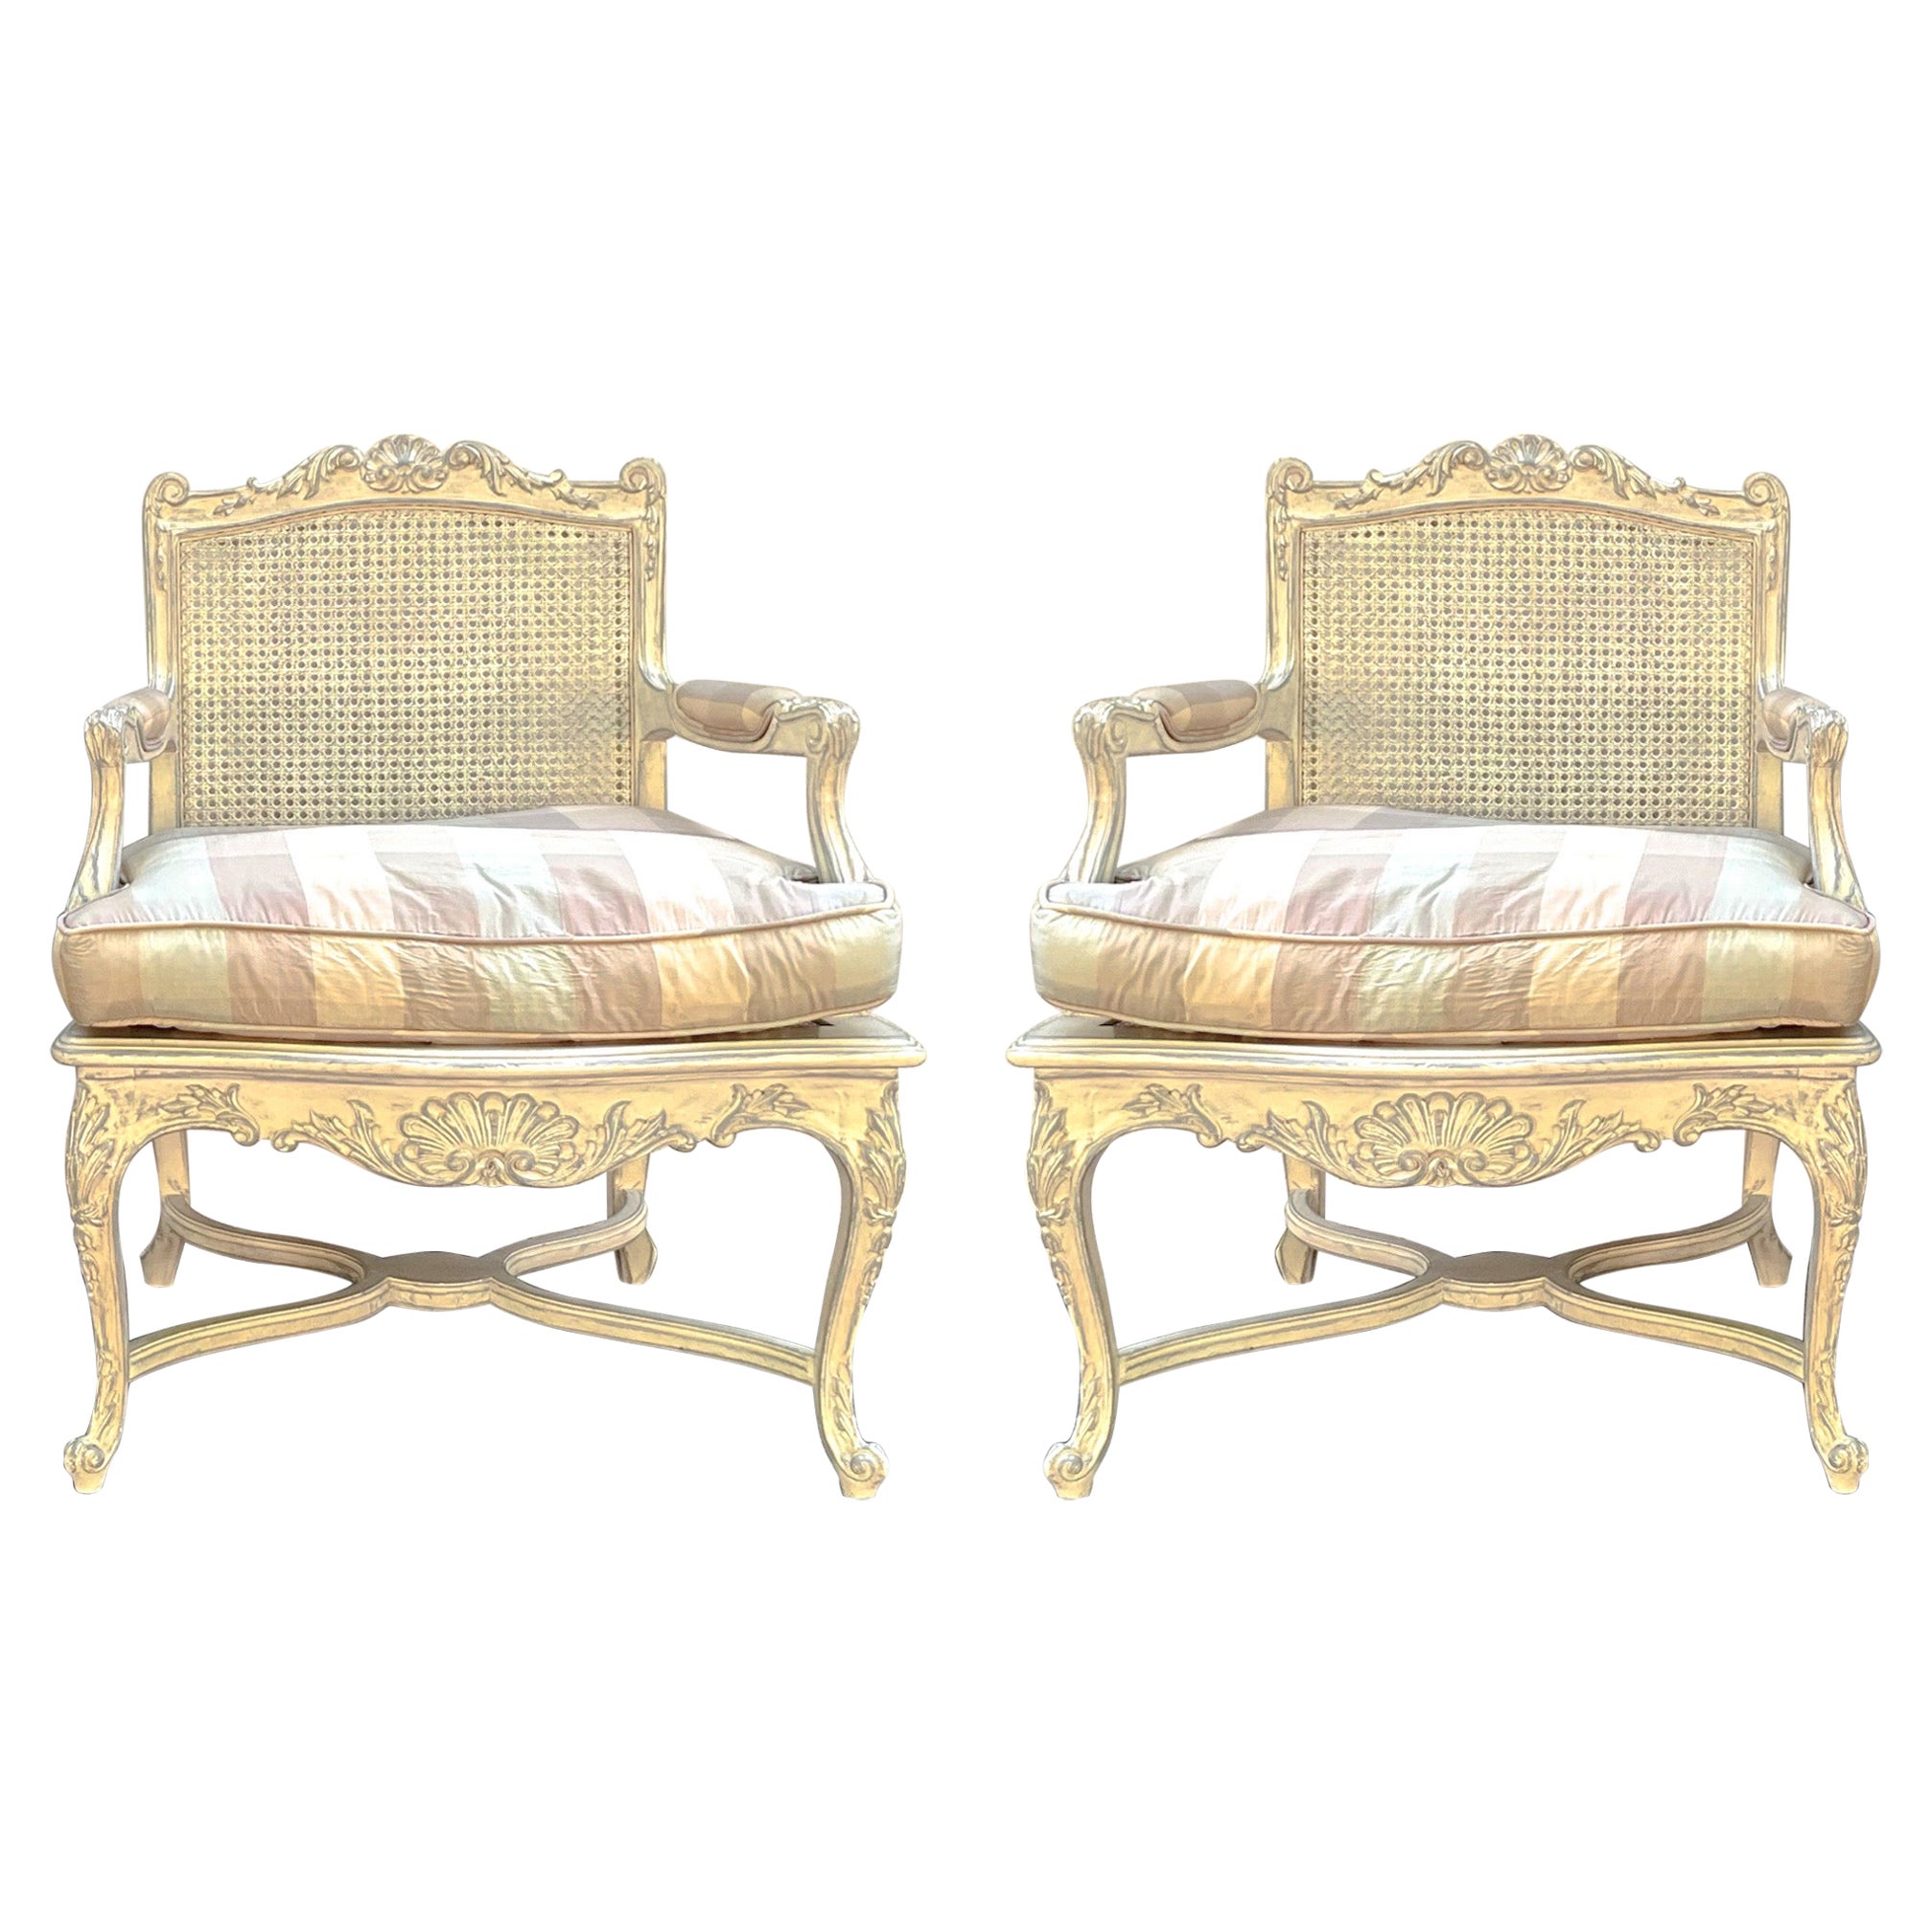 Voici une belle paire de chaises bergères cannées de style Louis XV avec une tapisserie à carreaux vintage. Le revêtement ressemble à de la soie, mais il pourrait s'agir d'un mélange. Les cadres sont peints en ivoire avec des accents gris. Le siège